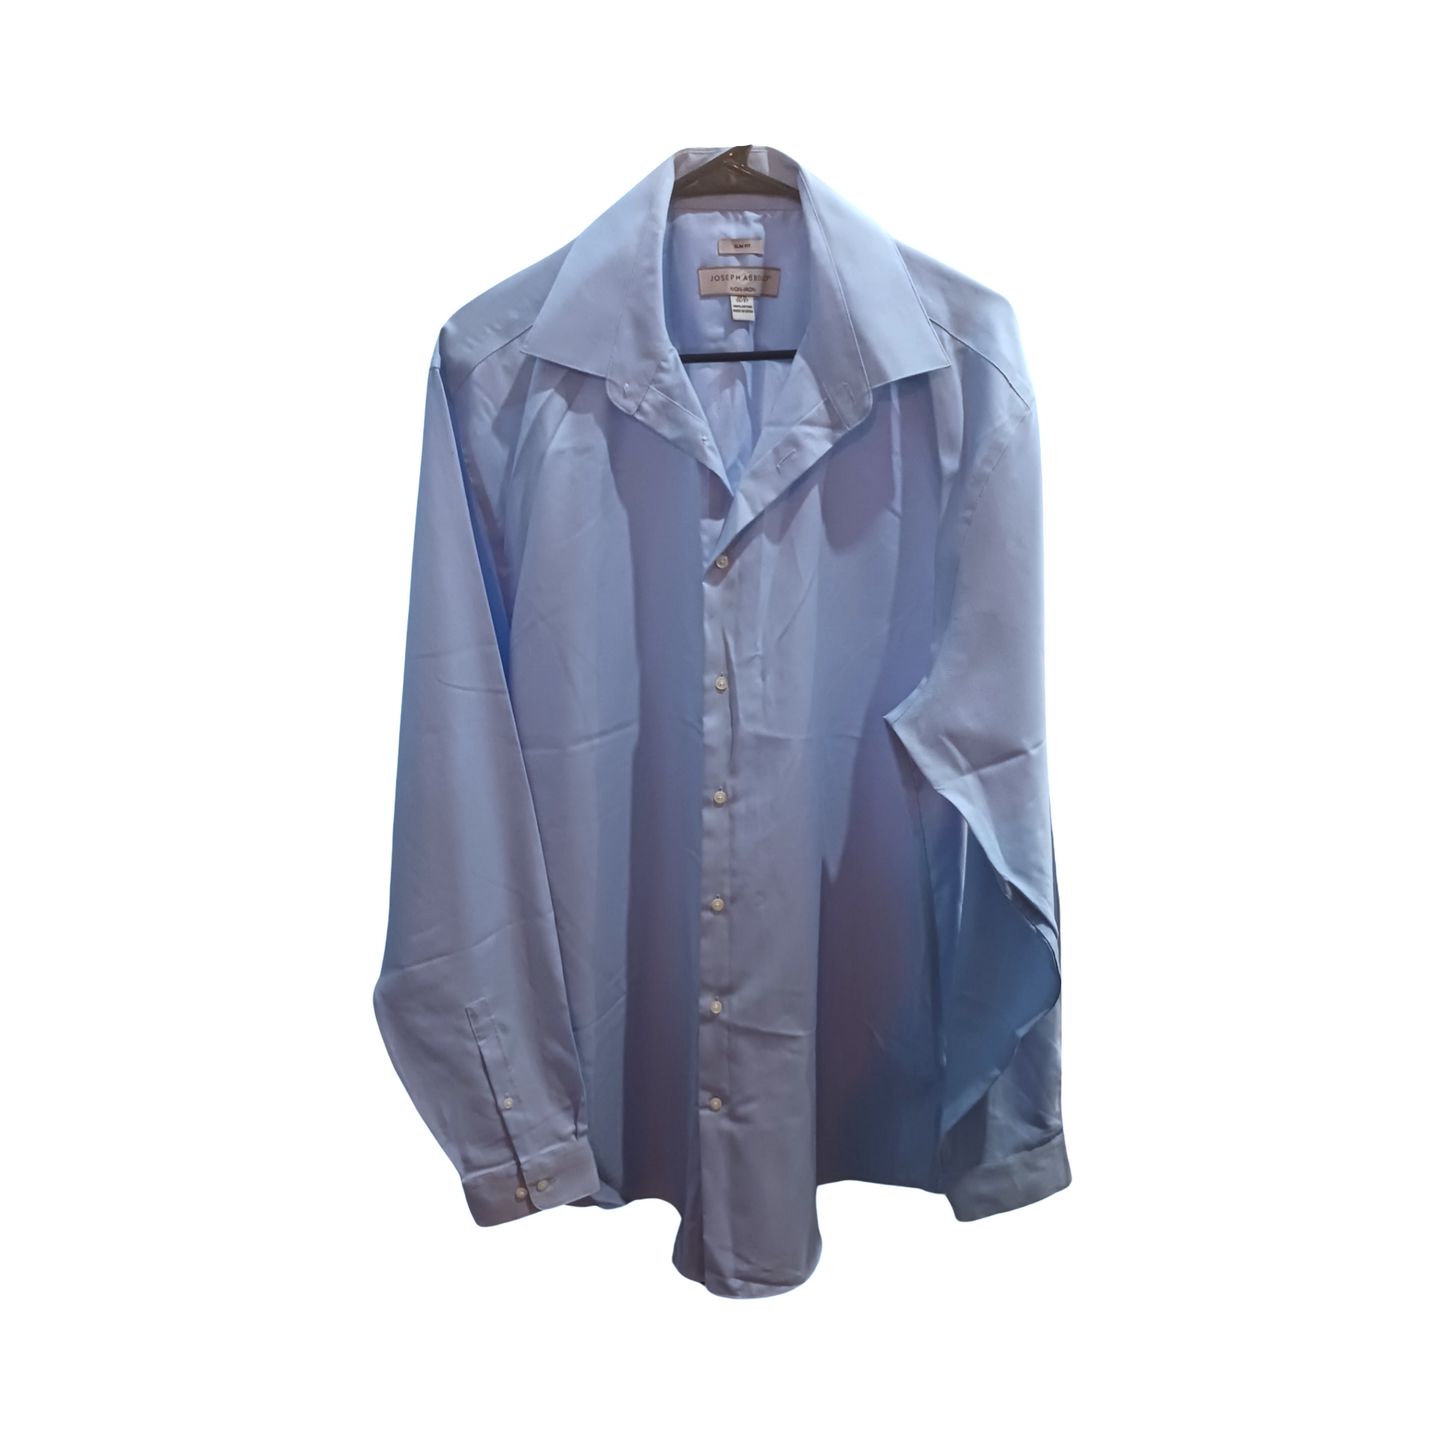 Joseph Abboud Mens Non-iron Button-Up Shirt, Blue, Slim-fit, Size 16 1/2, 37/38